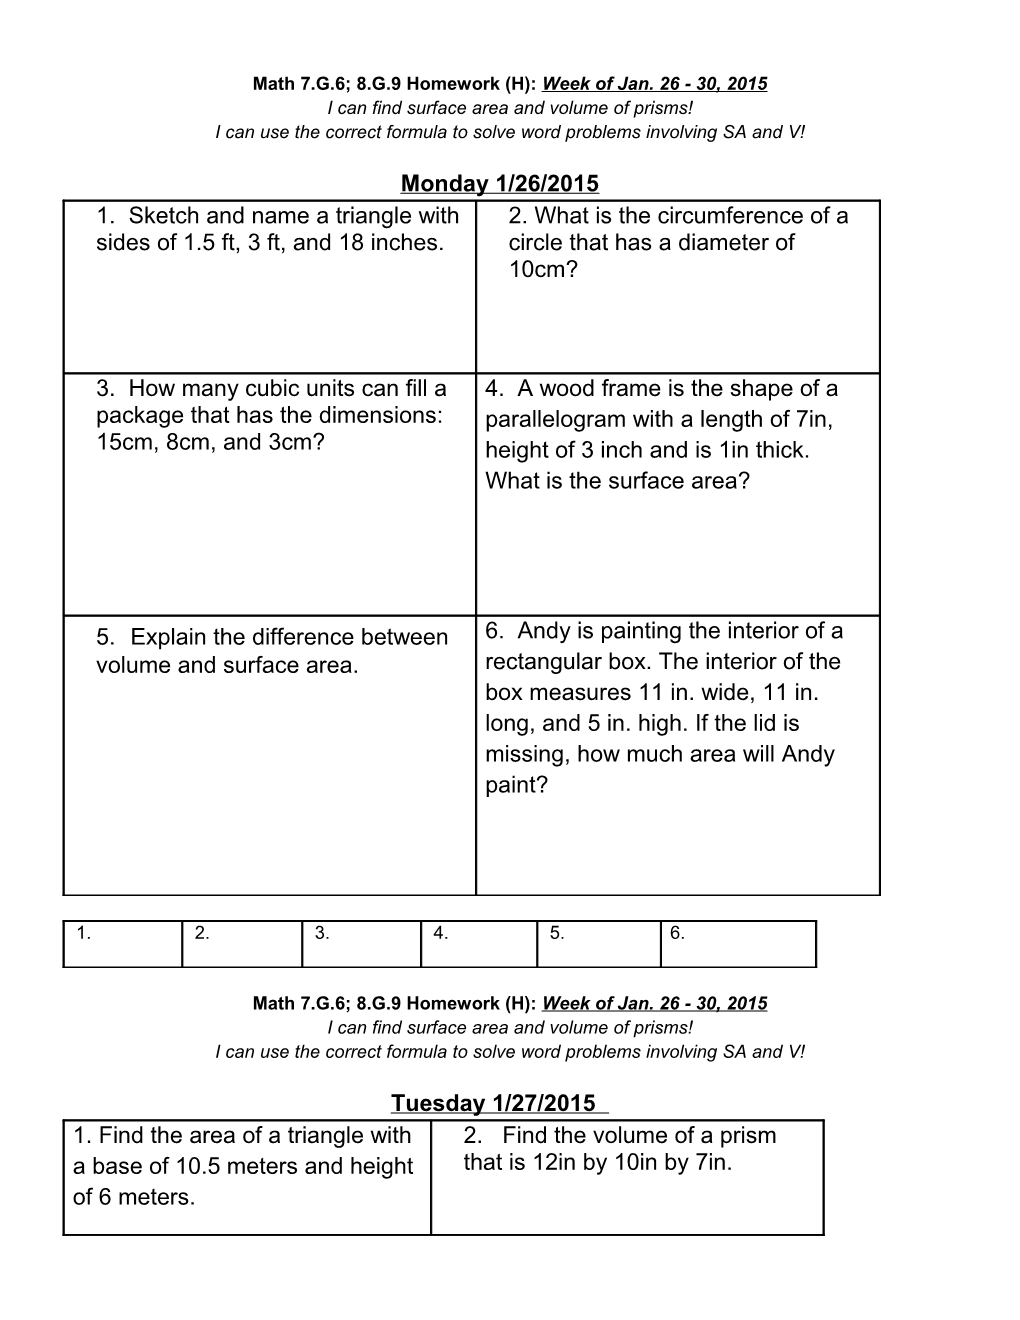 Math 7.G.6; 8.G.9 Homework (H):Week of Jan. 26 - 30, 2015